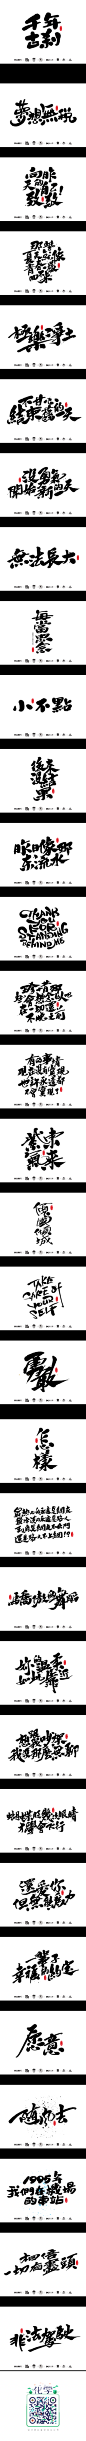 二零一七二月数位板戏笔分享_字体传奇网-中国首个字体品牌设计师交流网 #字体#